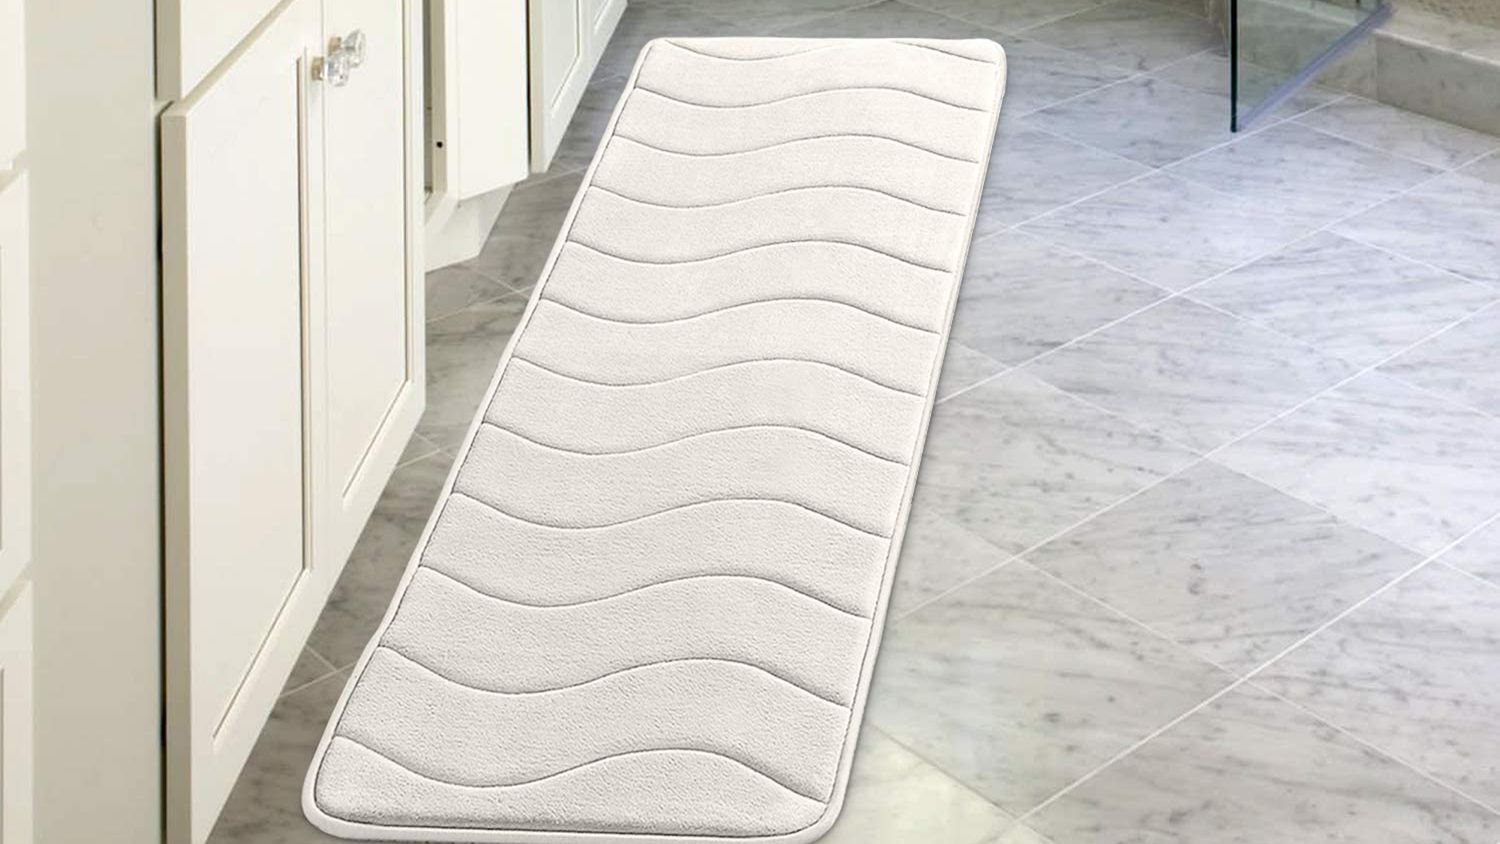 Absorbent Memory Foam Non-slip Bathroom Carpet Shower Bedroom Bath Mat Floor Rug 